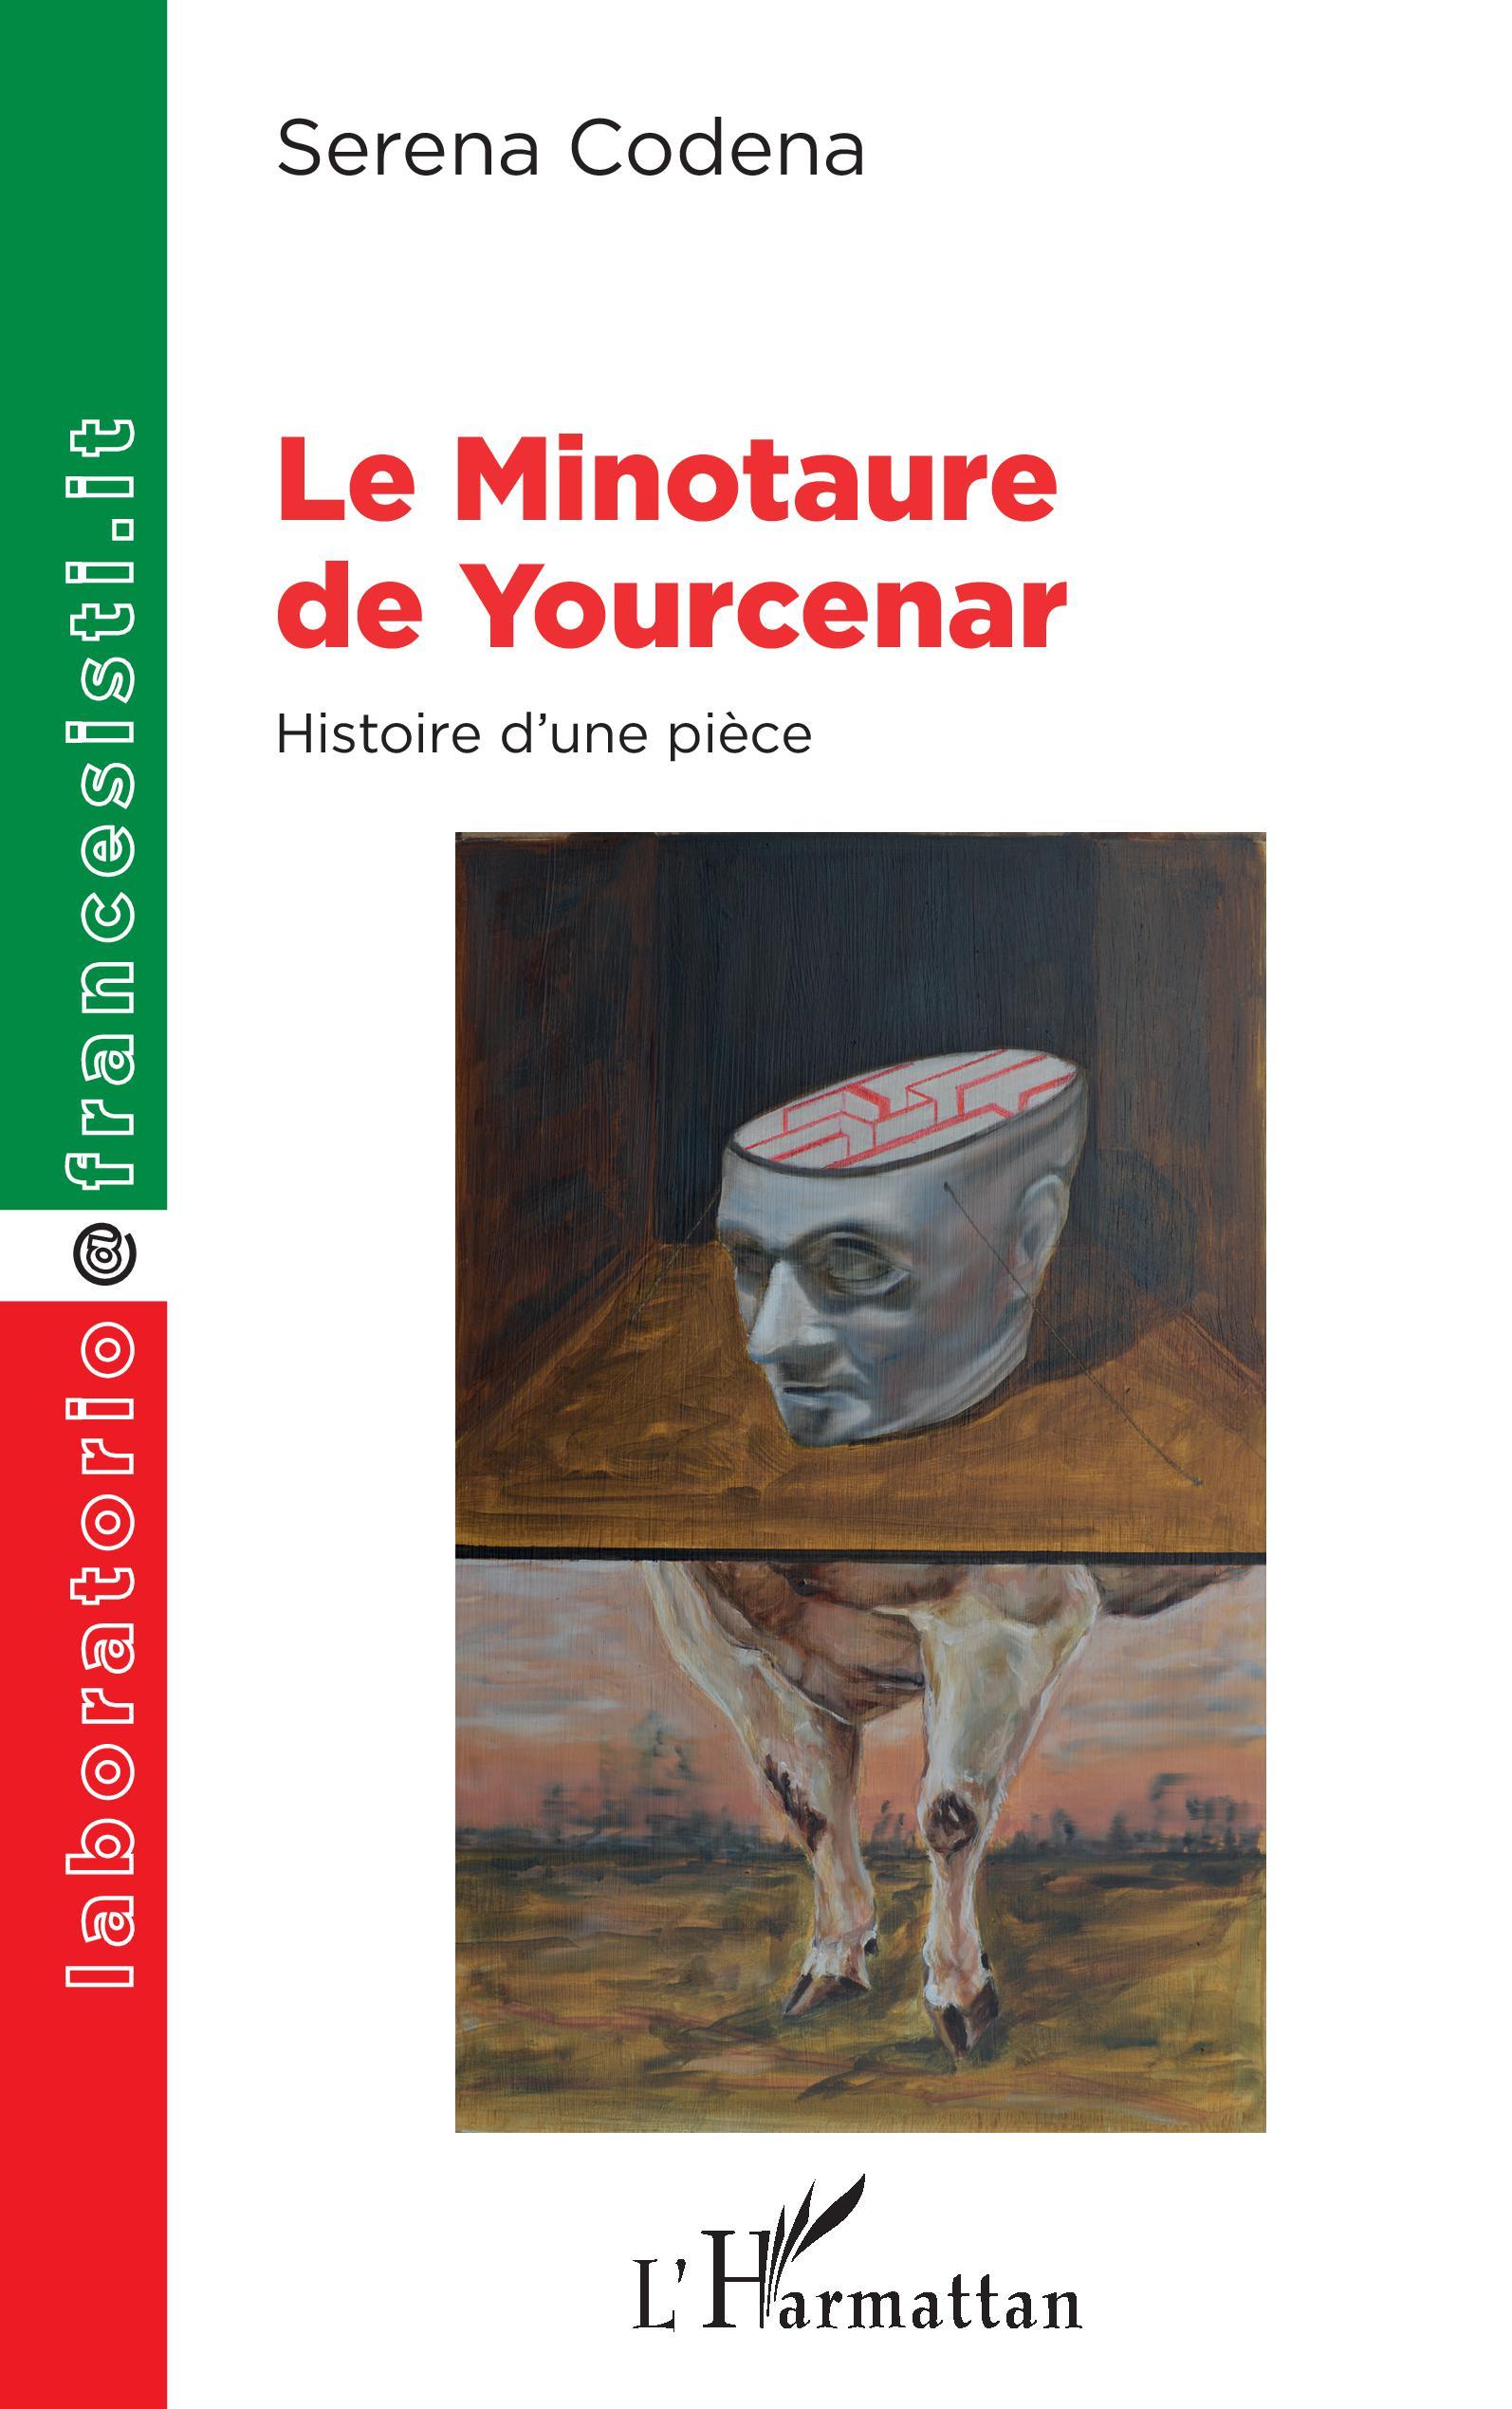 Le Minotaure de Yourcenar, Histoire d'une pièce (9782343243344-front-cover)